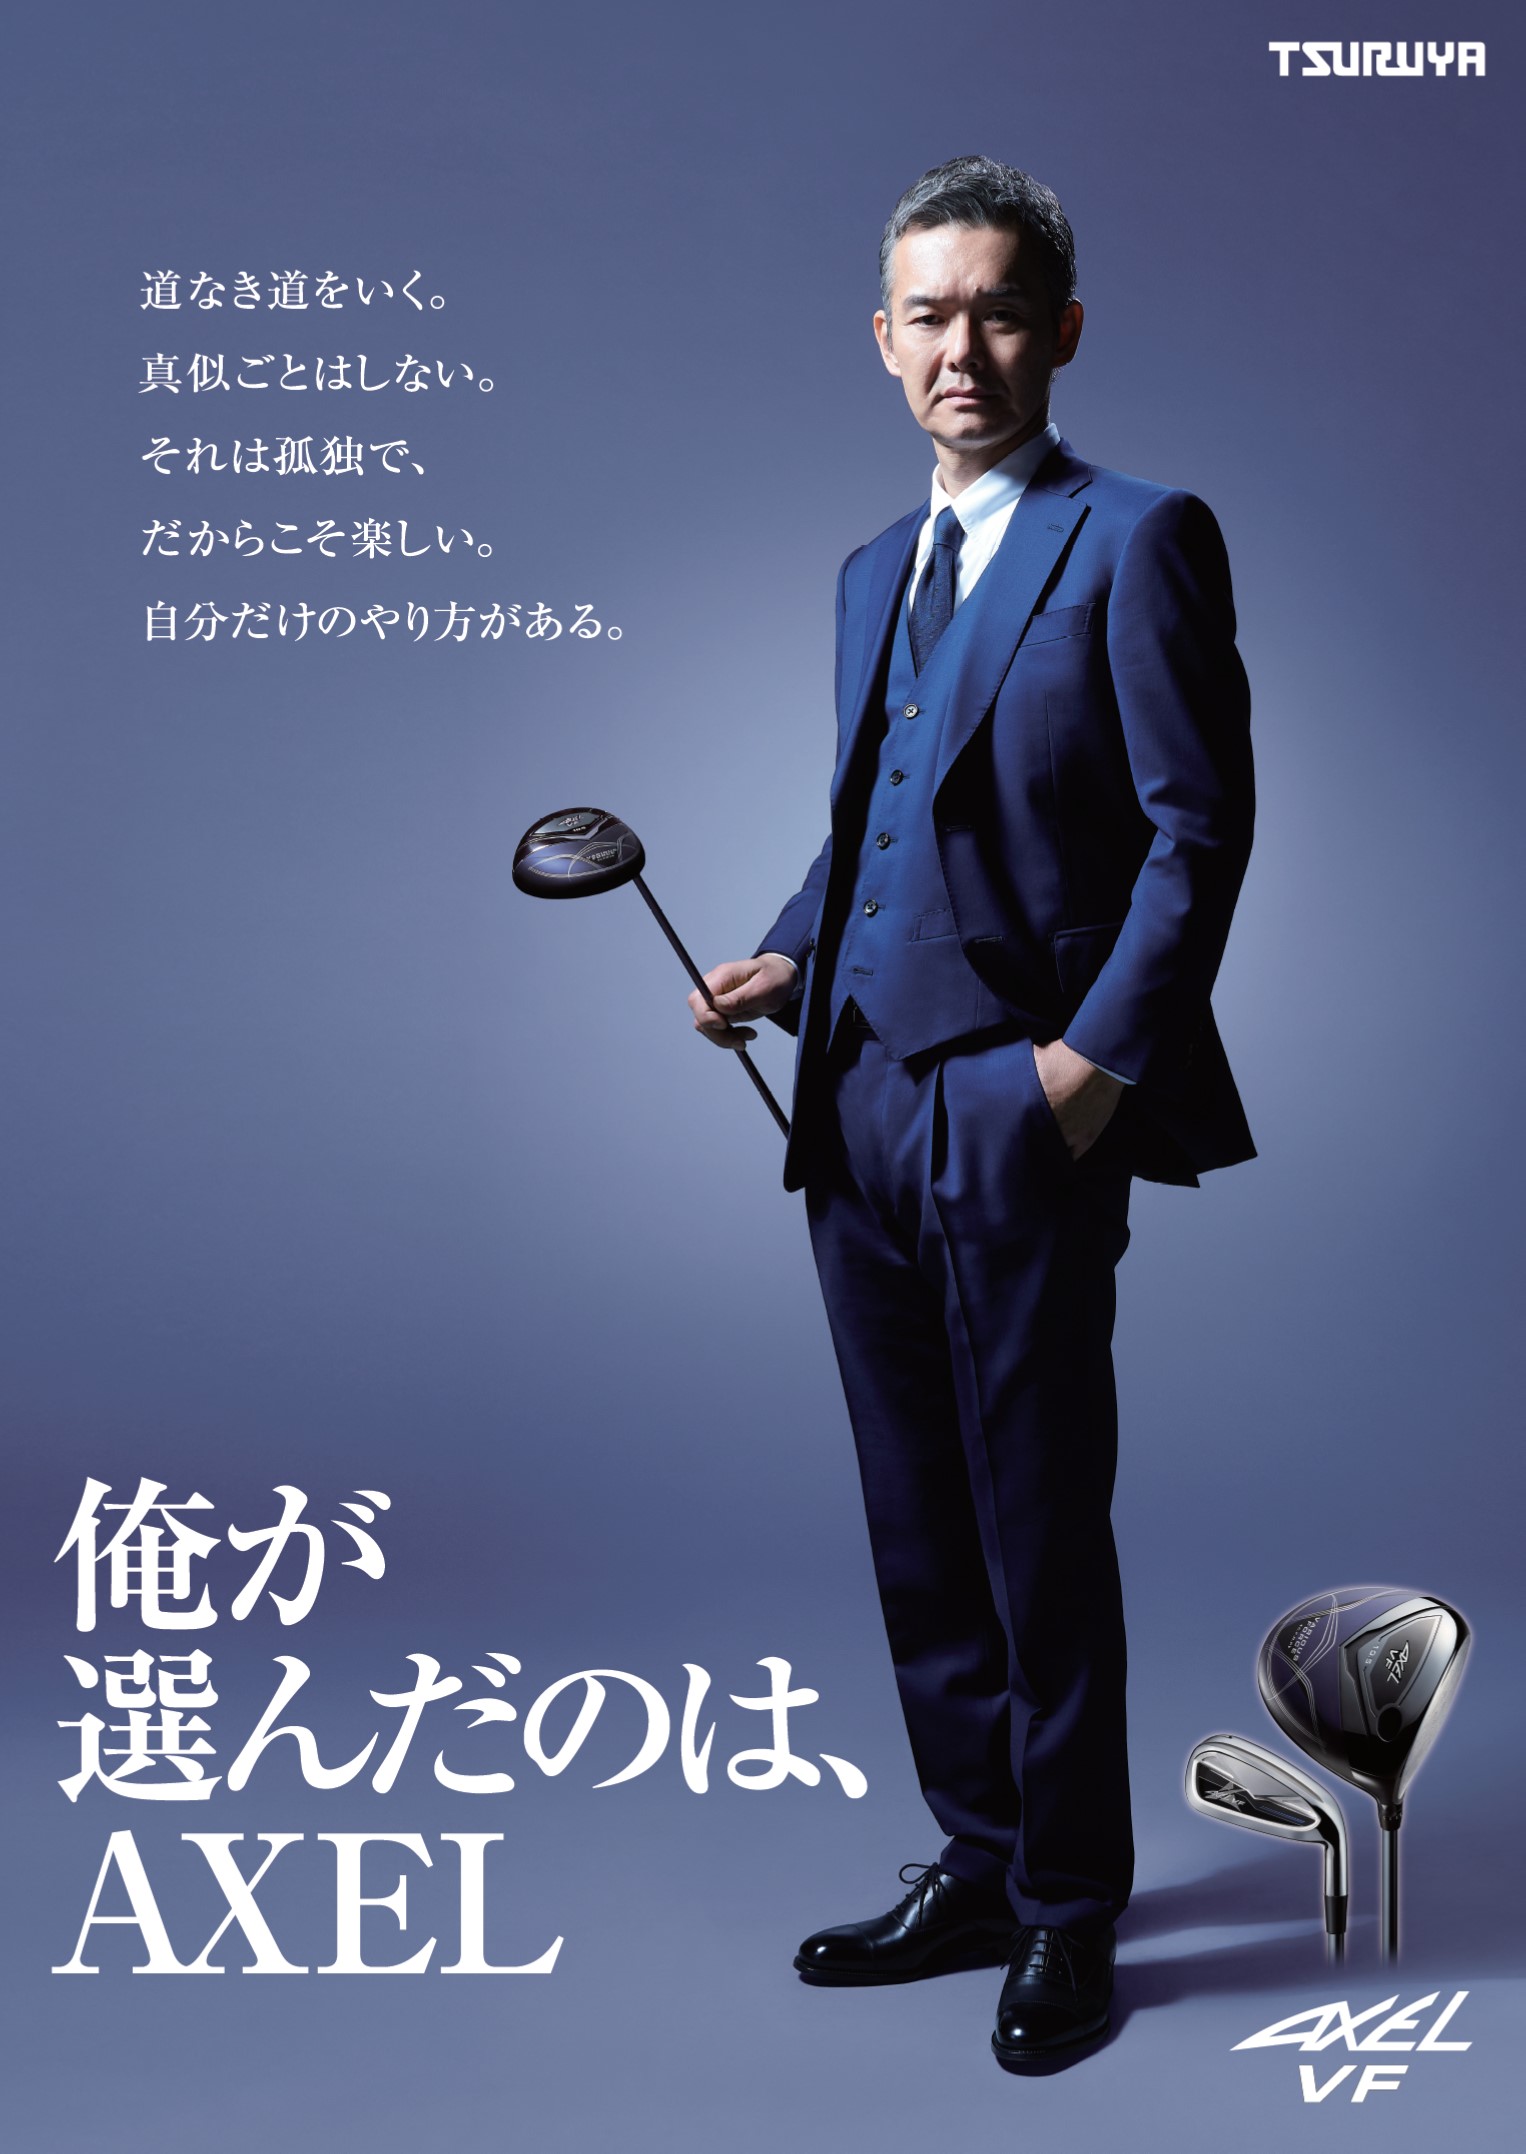 俳優 渡部篤郎氏 つるやゴルフのオリジナルブランド Axel ブランドアンバサダー就任 つるや株式会社のプレスリリース